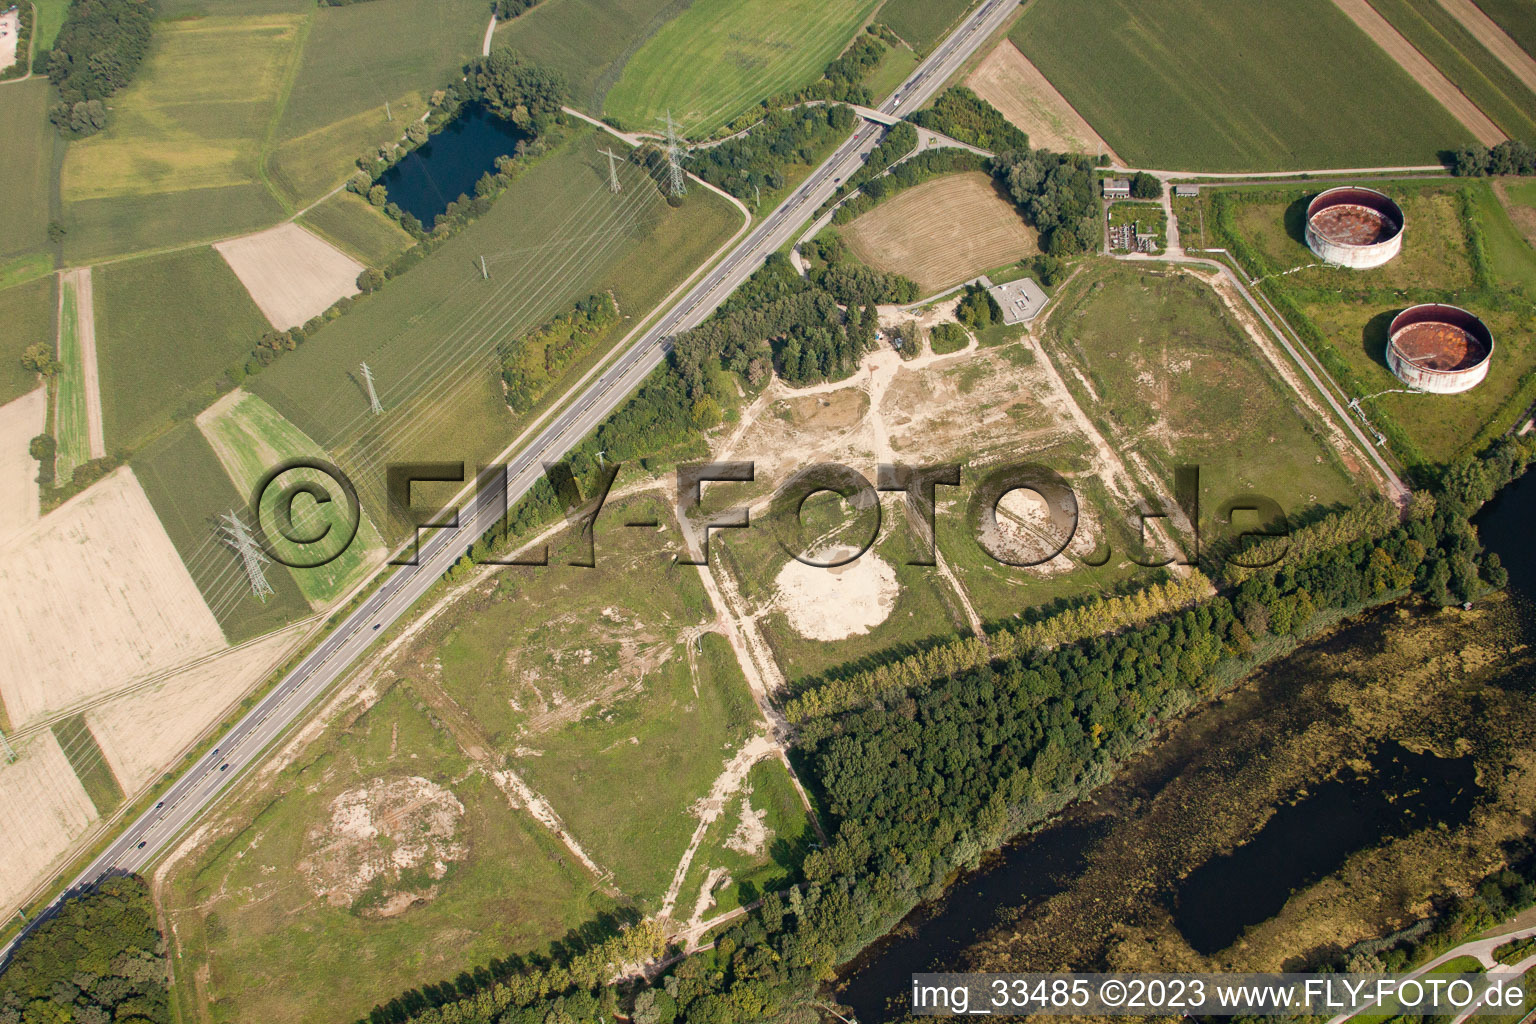 Vue aérienne de Parc de stockage démantelé à Jockgrim dans le département Rhénanie-Palatinat, Allemagne